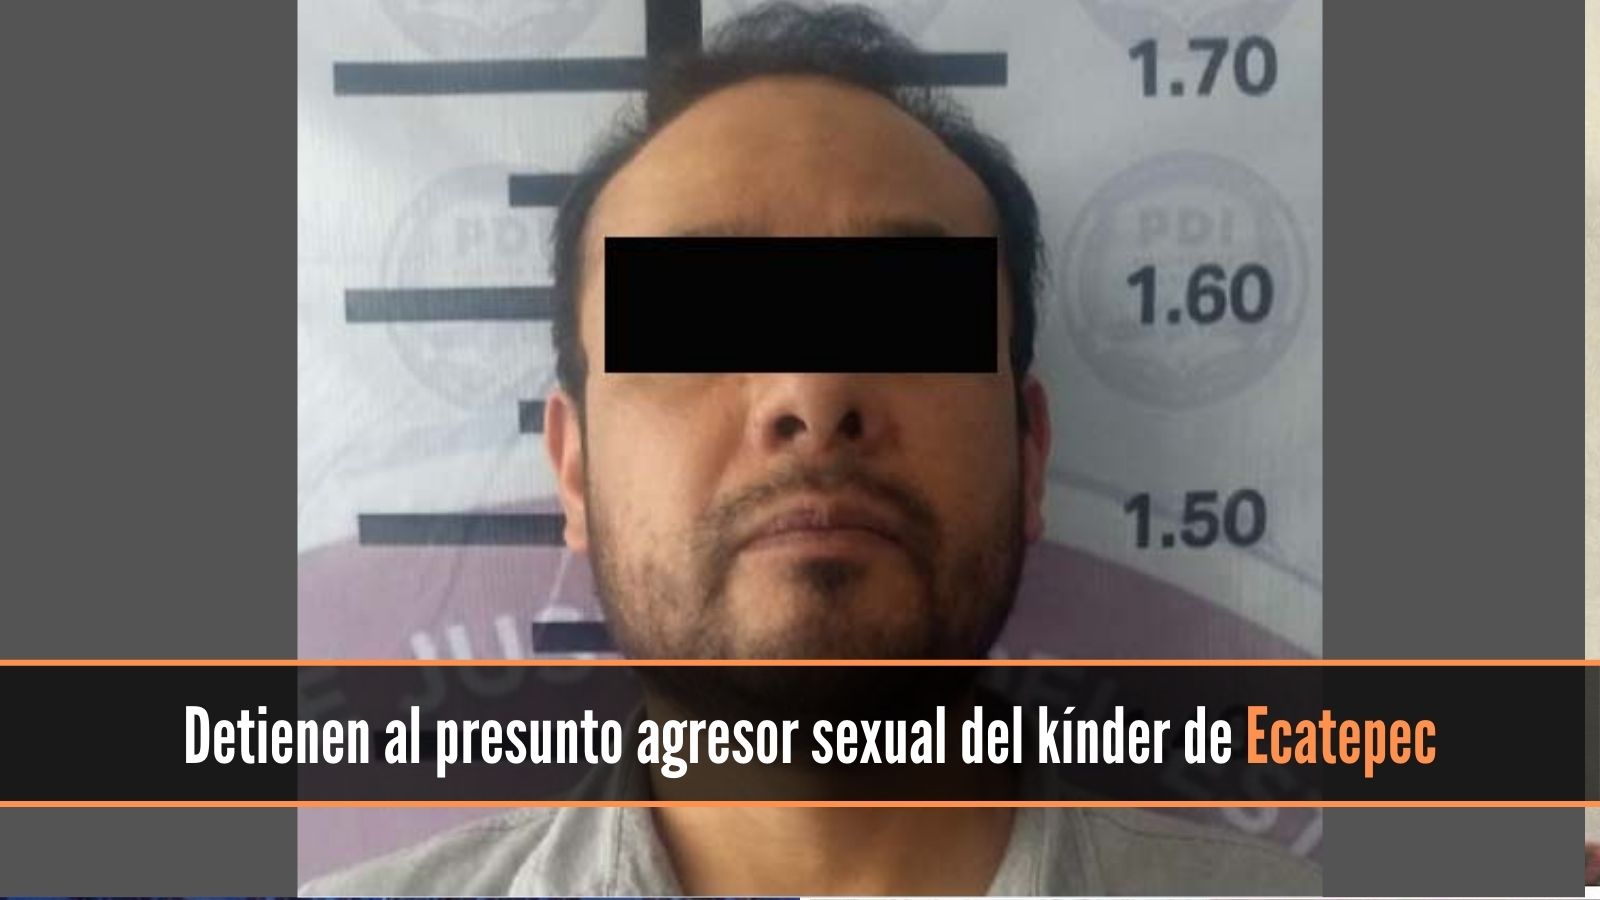 Detienen al presunto agresor sexual del kínder de Ecatepec